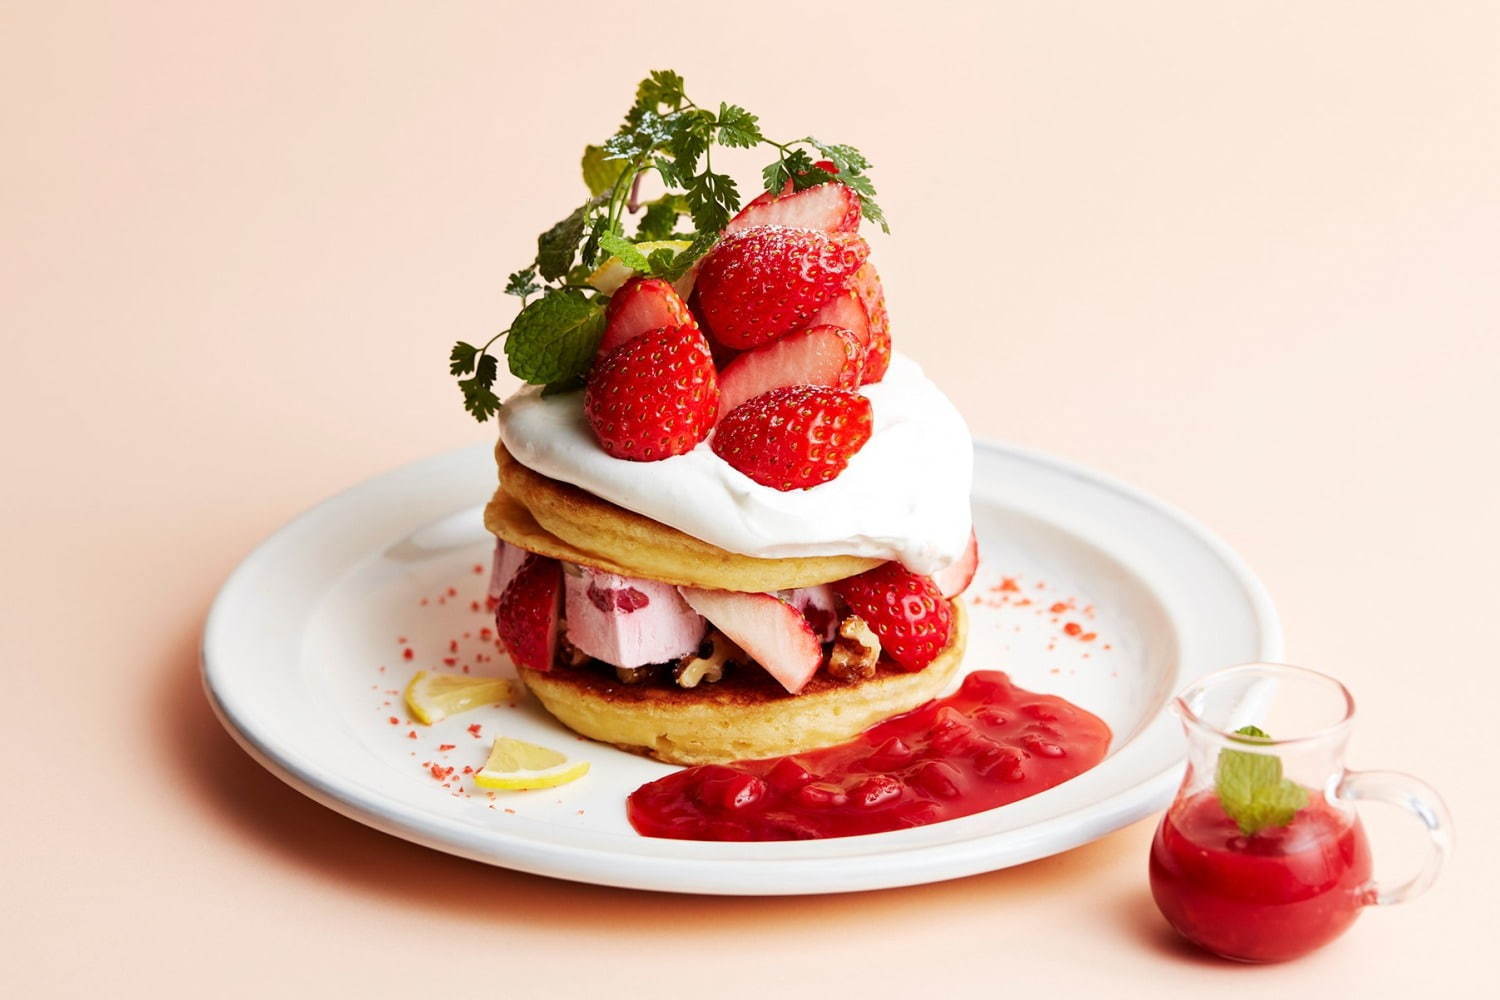 J S パンケーキカフェ 苺とフルーツアイスのパンケーキ 苺とアイスをサンドしたハーブ香る一皿 ファッションプレス